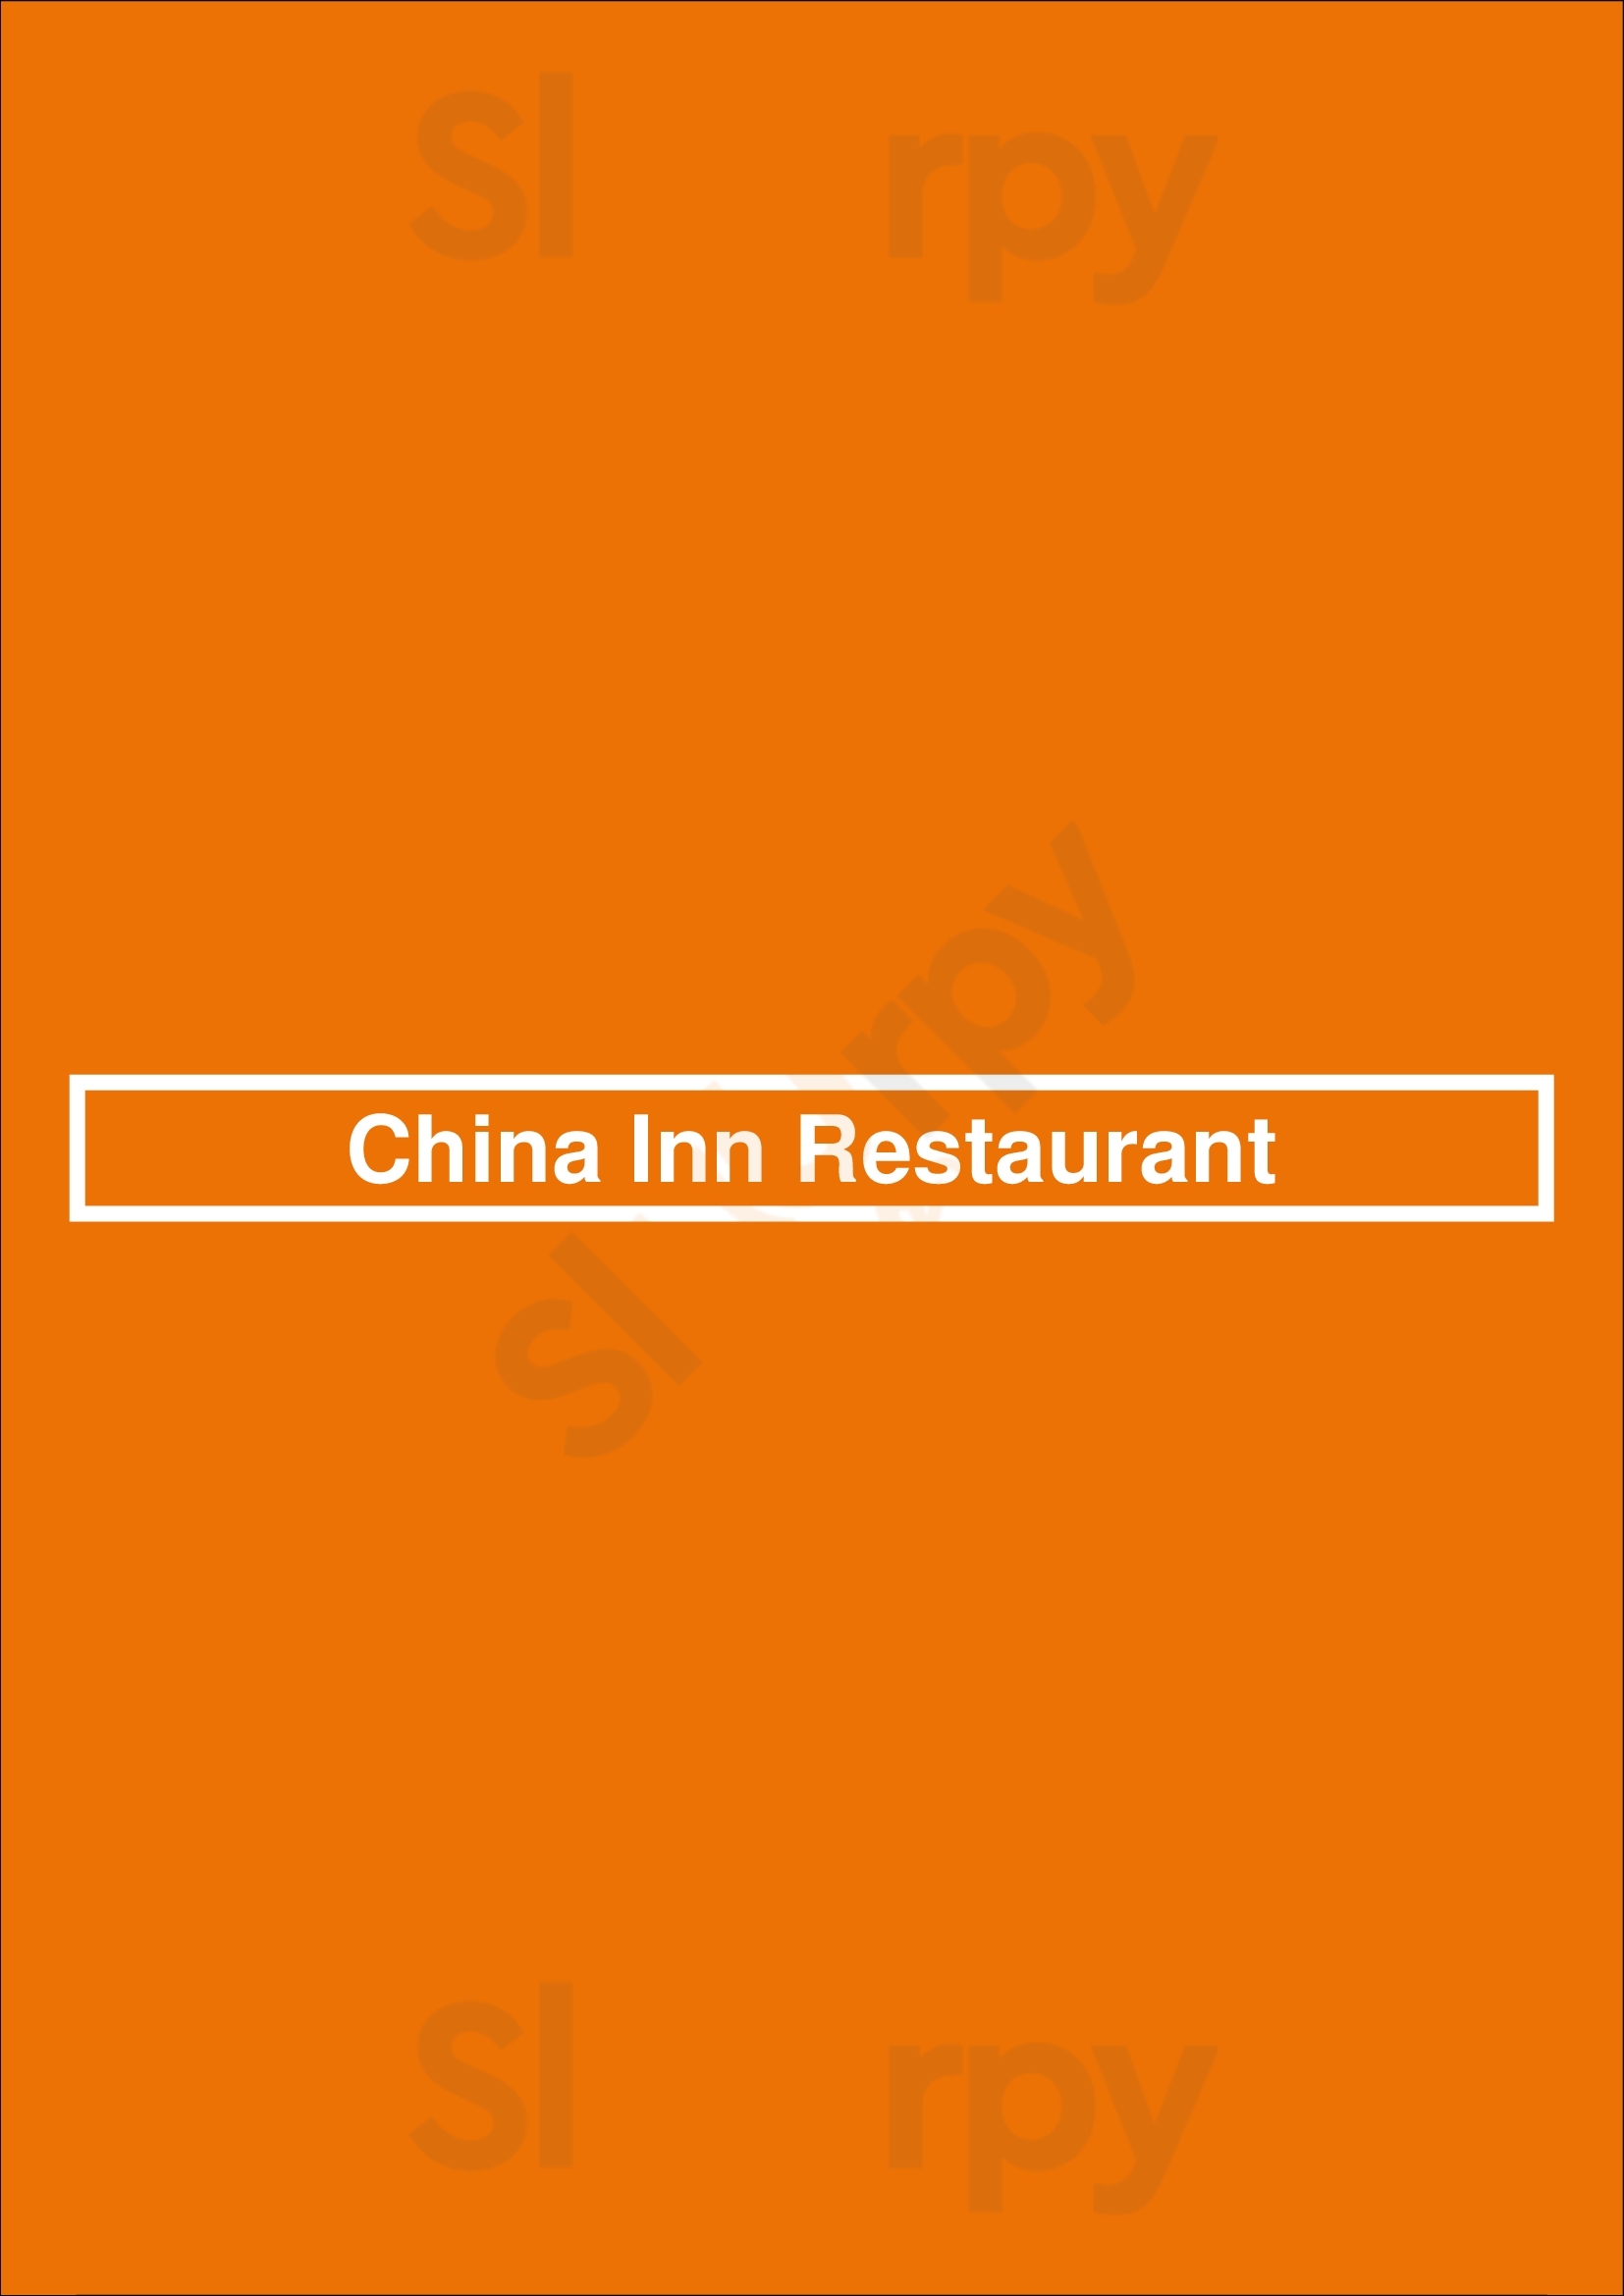 China Inn Restaurant San Jose Menu - 1